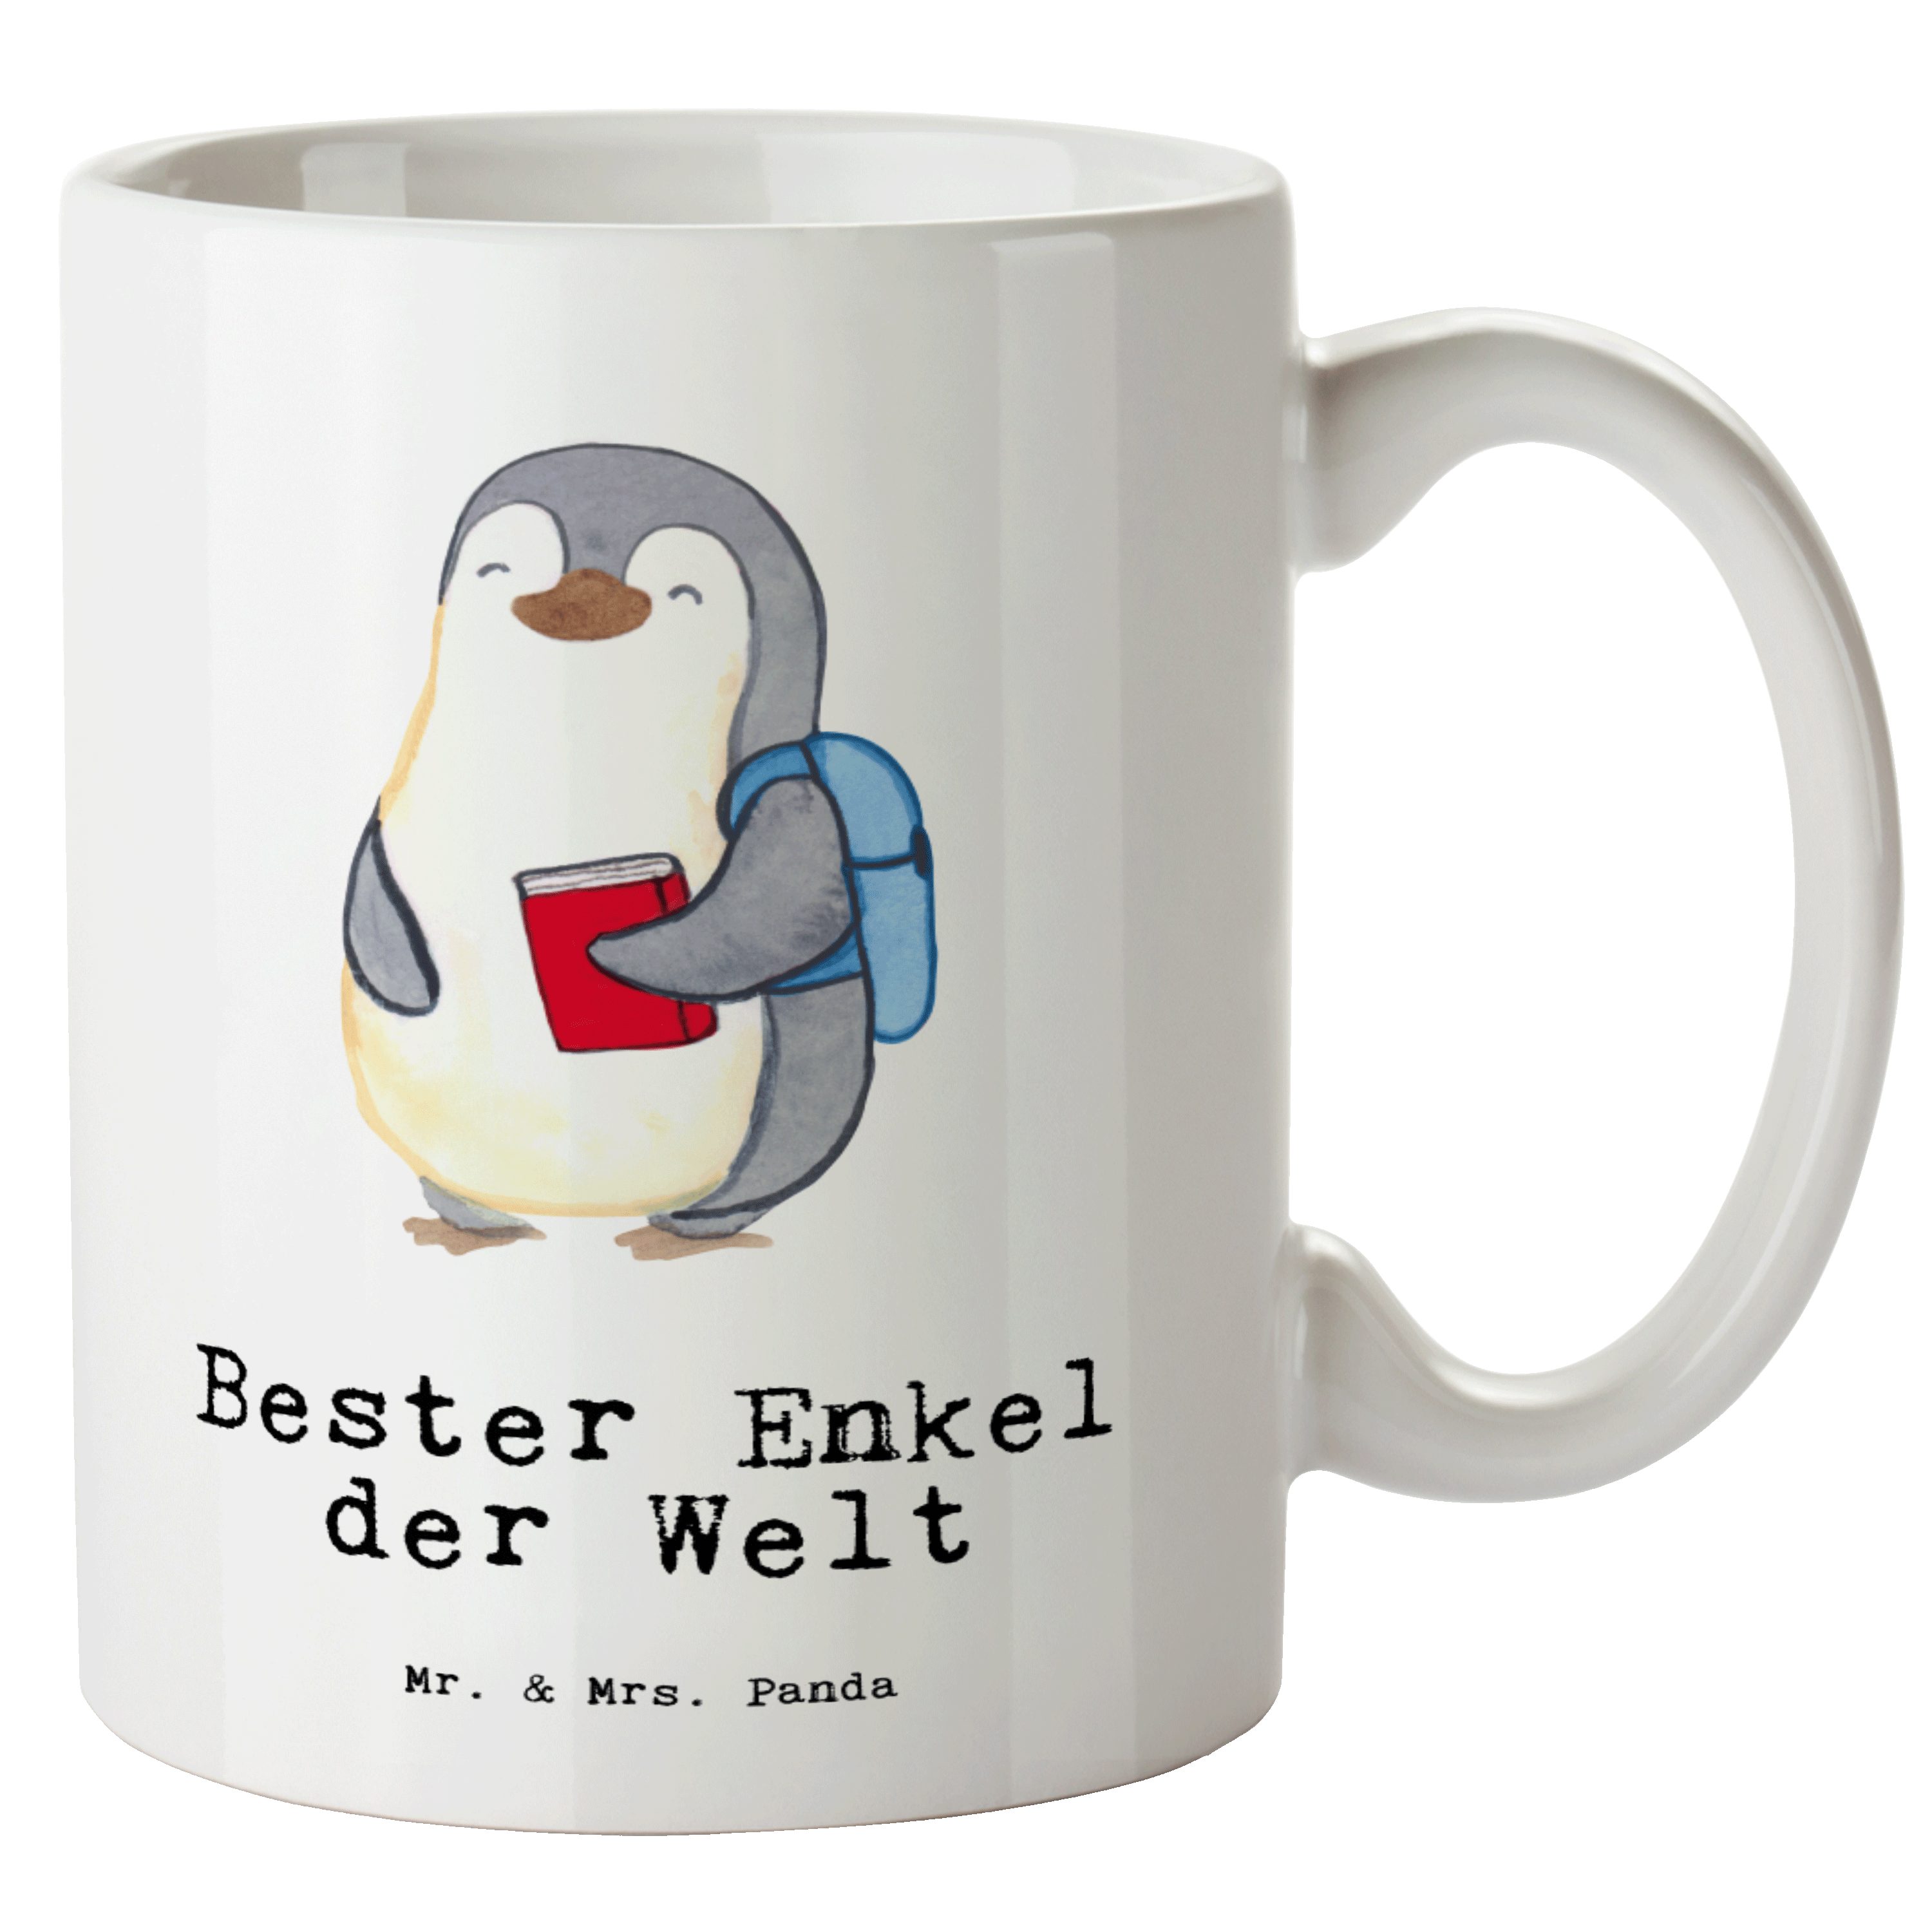 Mr. & Mrs. Panda Tasse Pinguin Bester Enkel der Welt - Weiß - Geschenk, Schenken, Grosse Kaf, XL Tasse Keramik